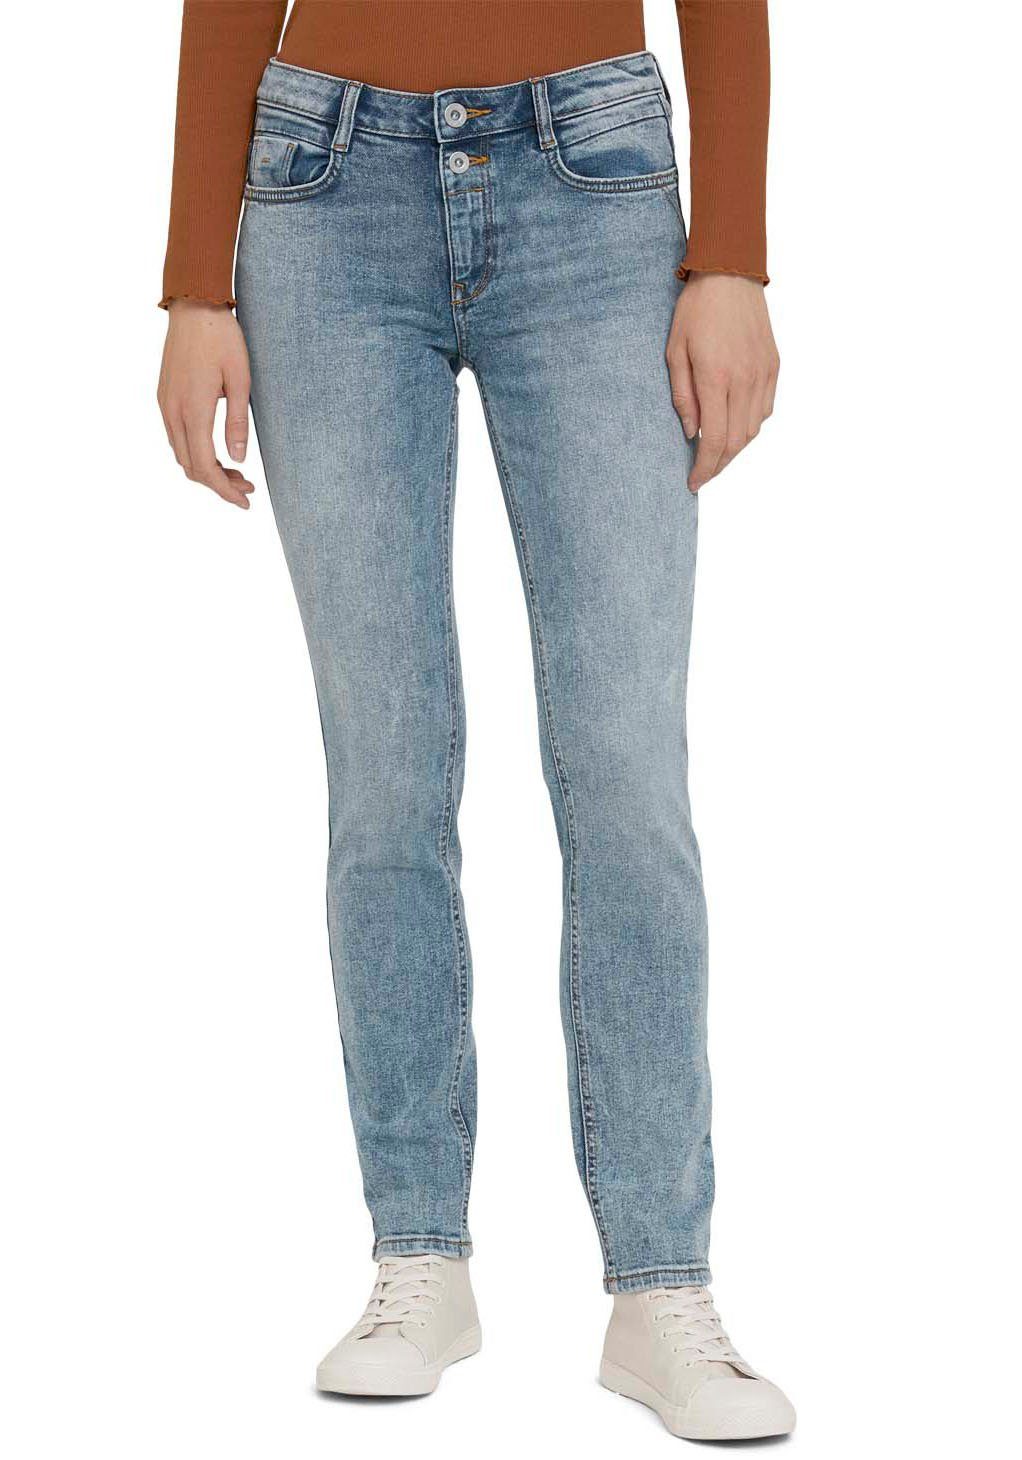 TOM TAILOR Slim-fit-Jeans »Alexa« im 5-Pocket-Design online kaufen | OTTO